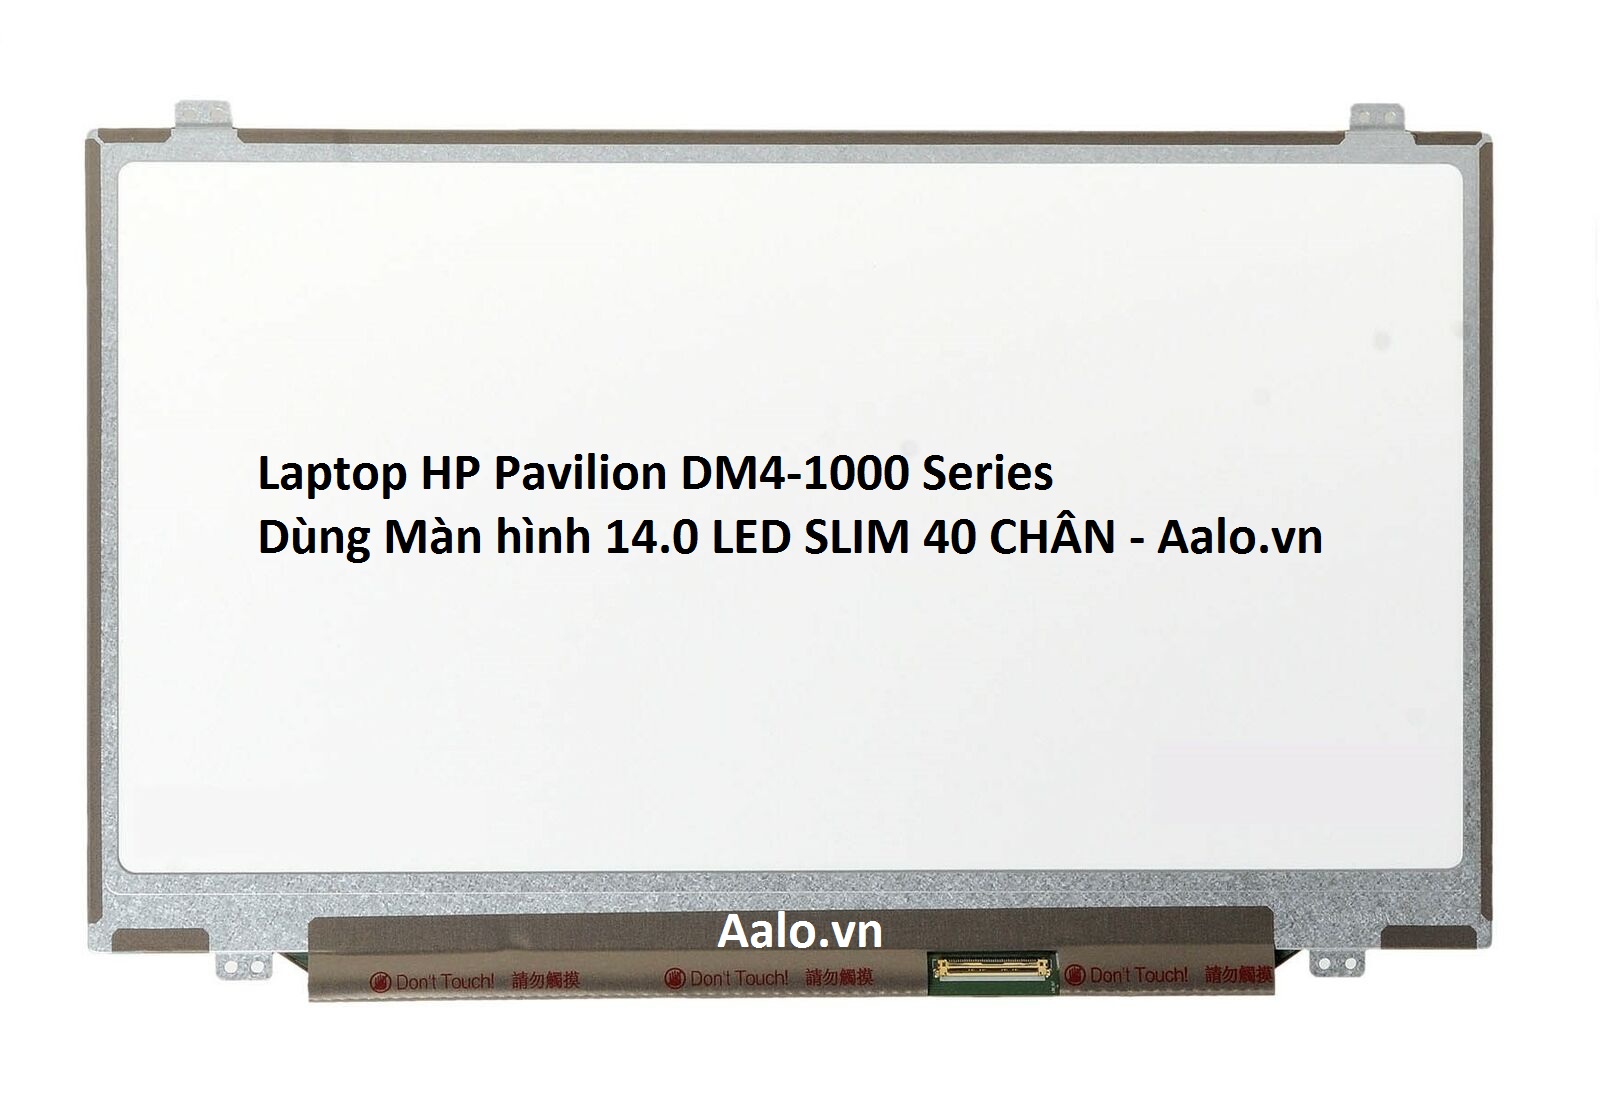 Màn hình Laptop HP Pavilion DM4-1000 Series - Aalo.vn